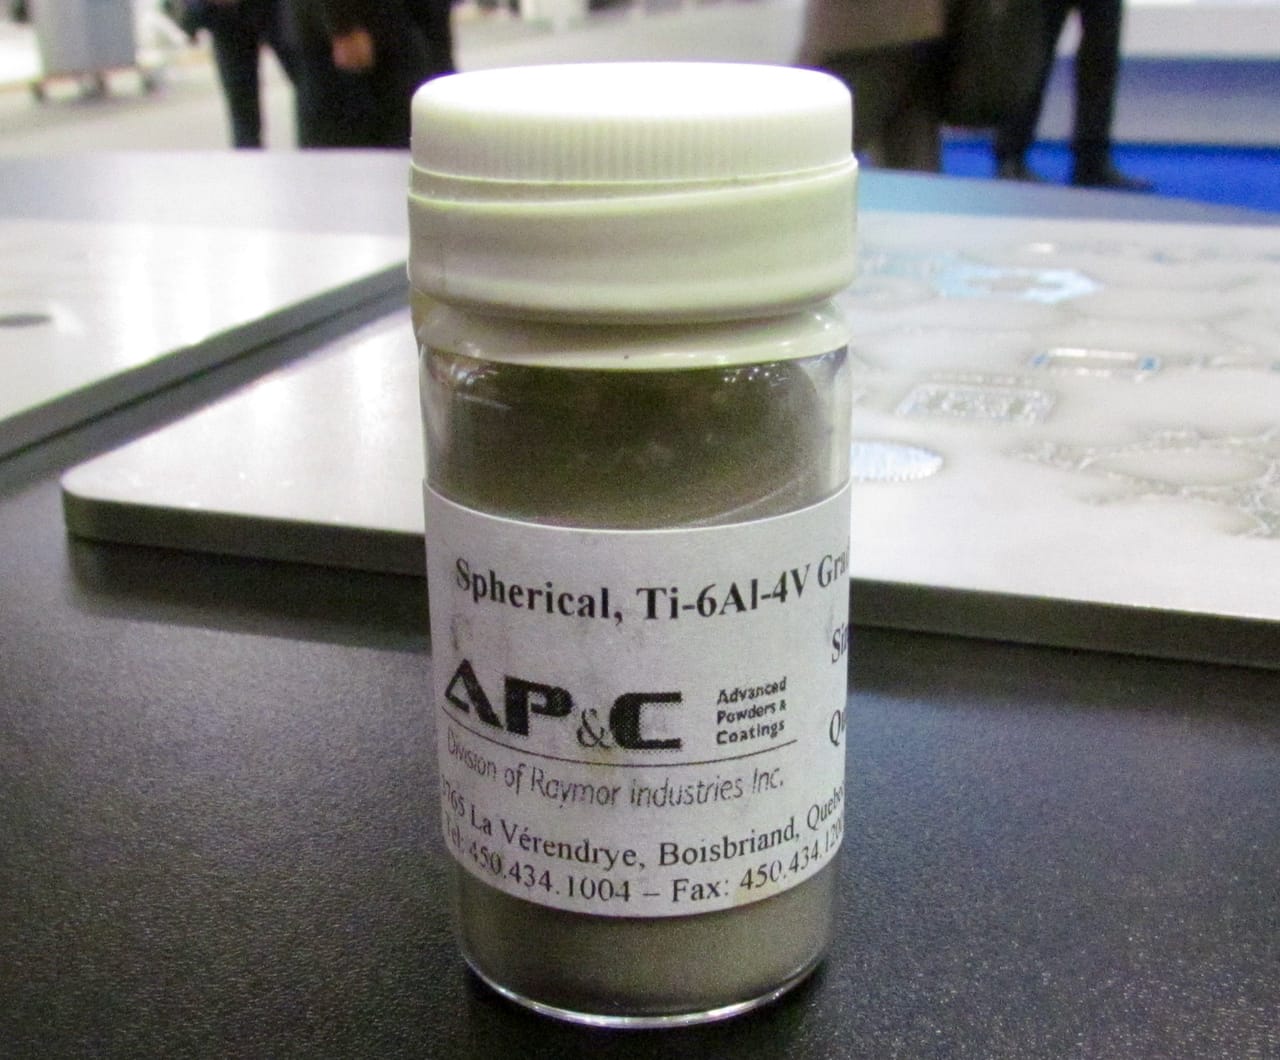  A sample of AP&C's 3D metal printing powder 